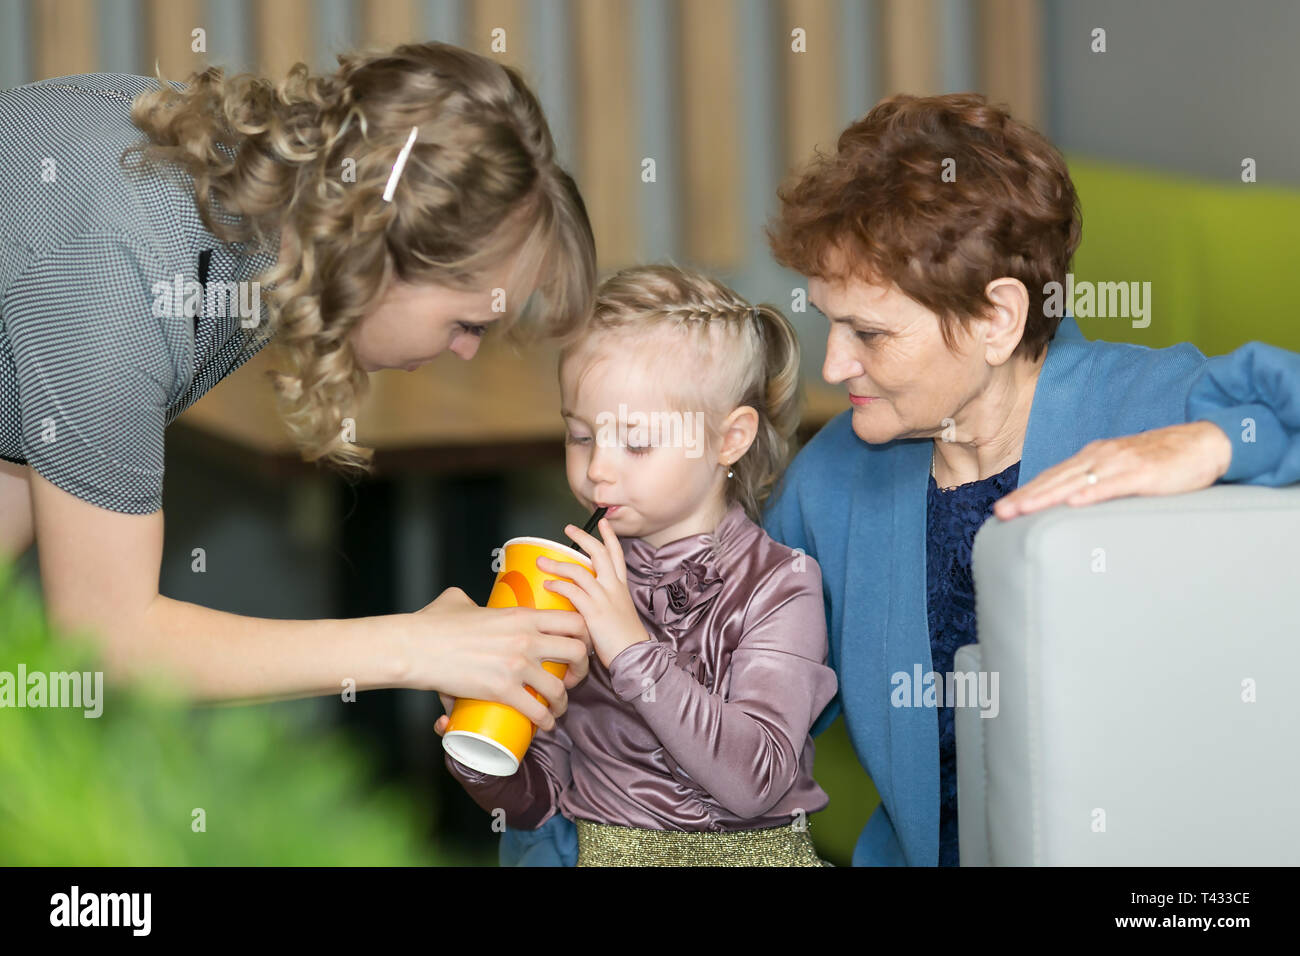 Eine junge Mutter hält ein Glas Wasser während der kleinen Tochter Getränke, und ihre Großmutter in der Nähe sitzt. Stockfoto